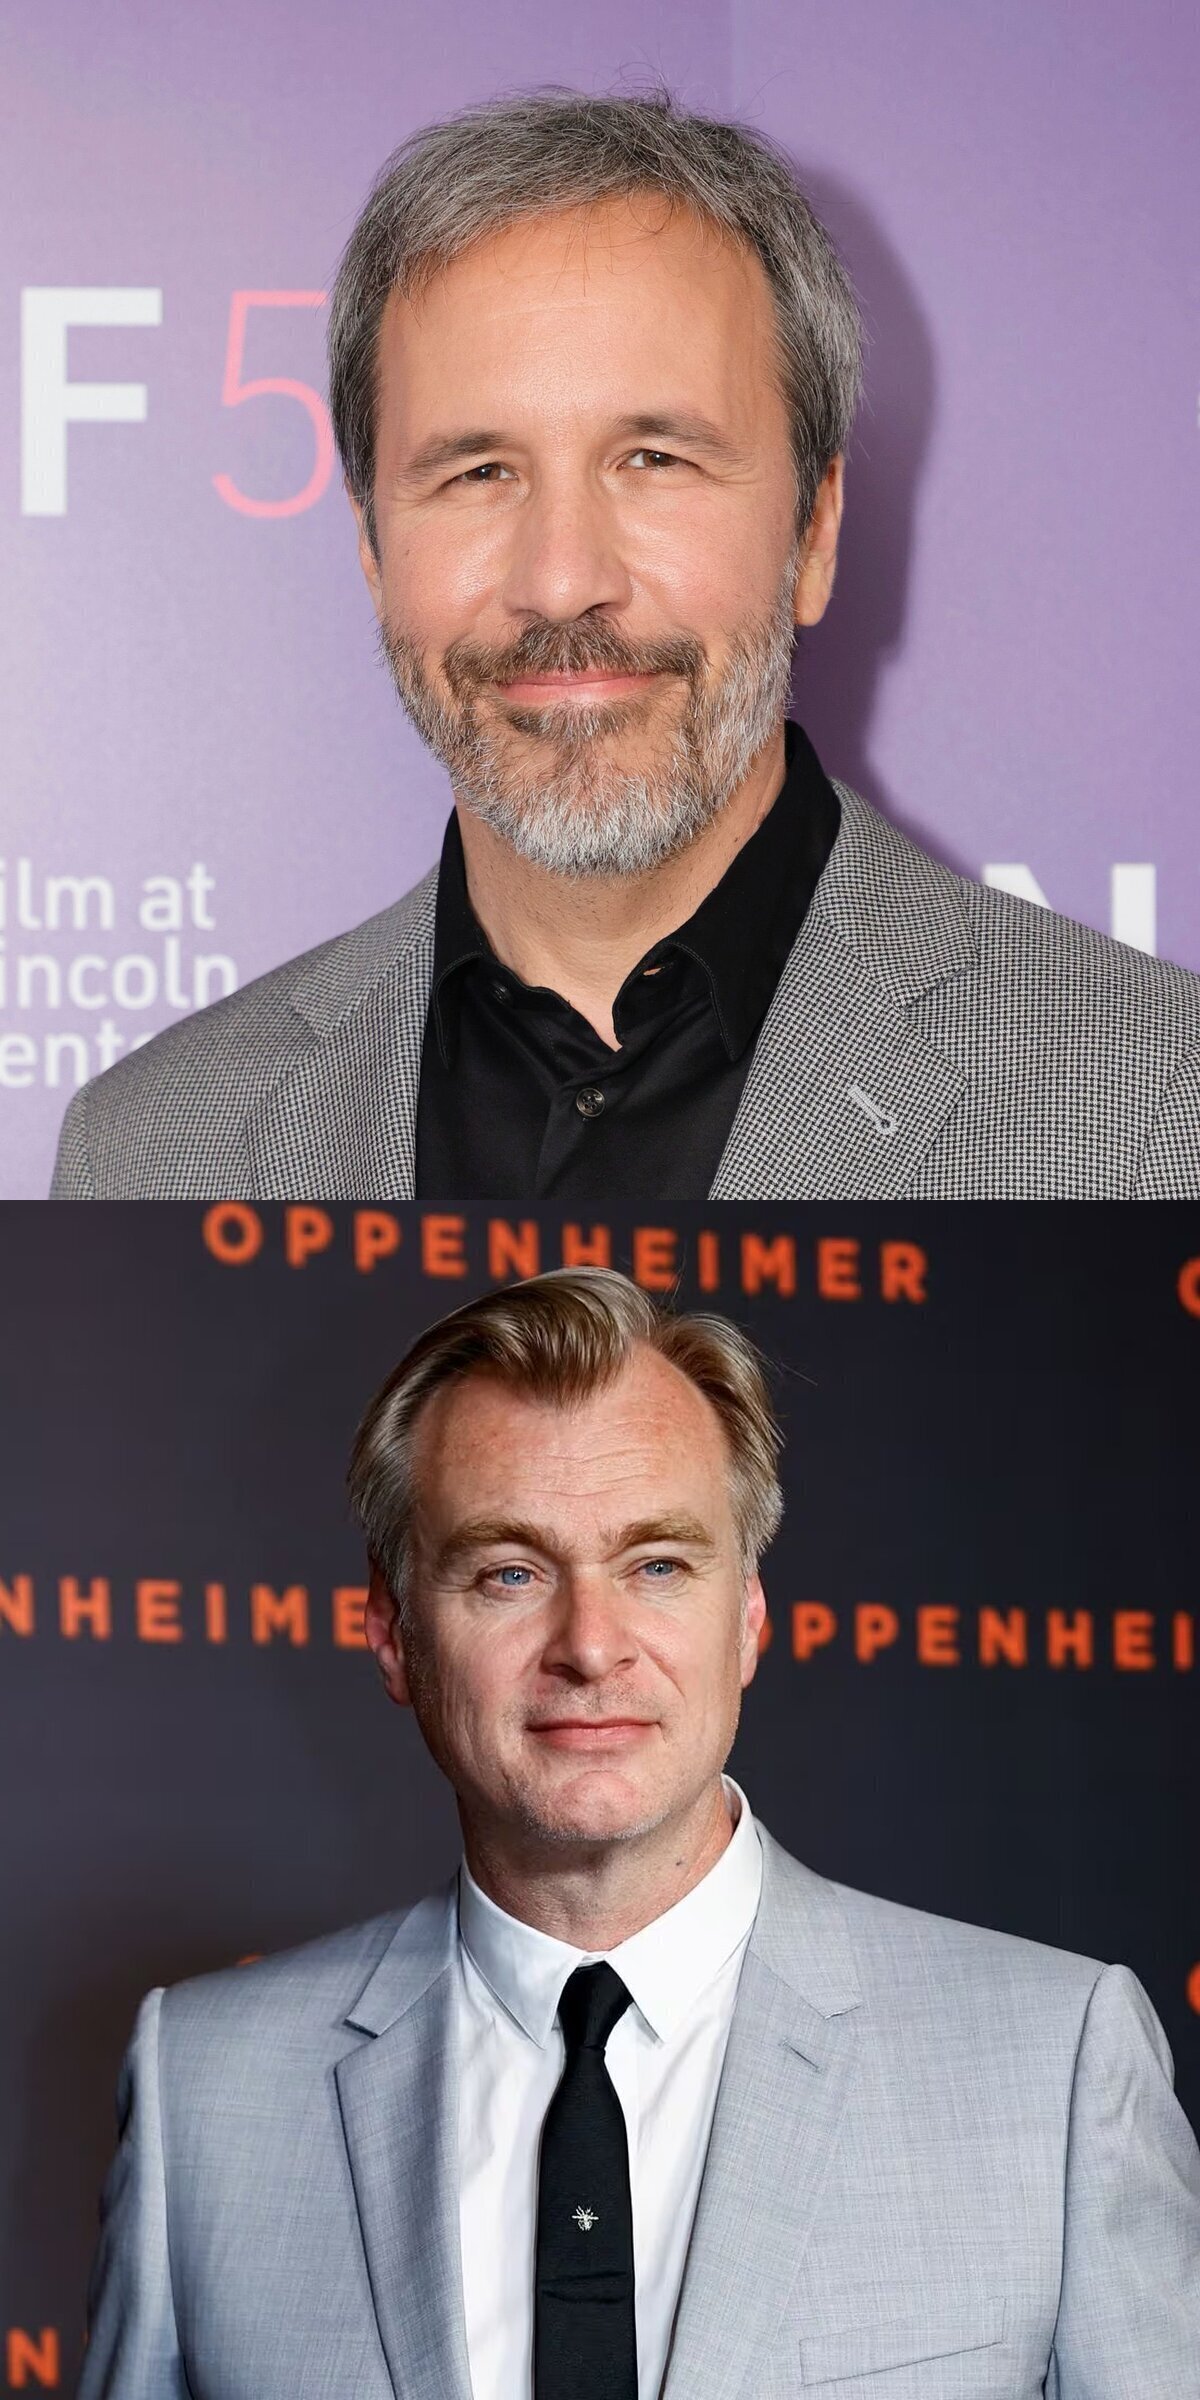 Estos dos señores se han pasado el Cine por completo, son probablemente dos de los cineastas más importantes del Siglo 21, larga vida a ambos.#DunePartTwo y #Oppenheimer han hecho historia.